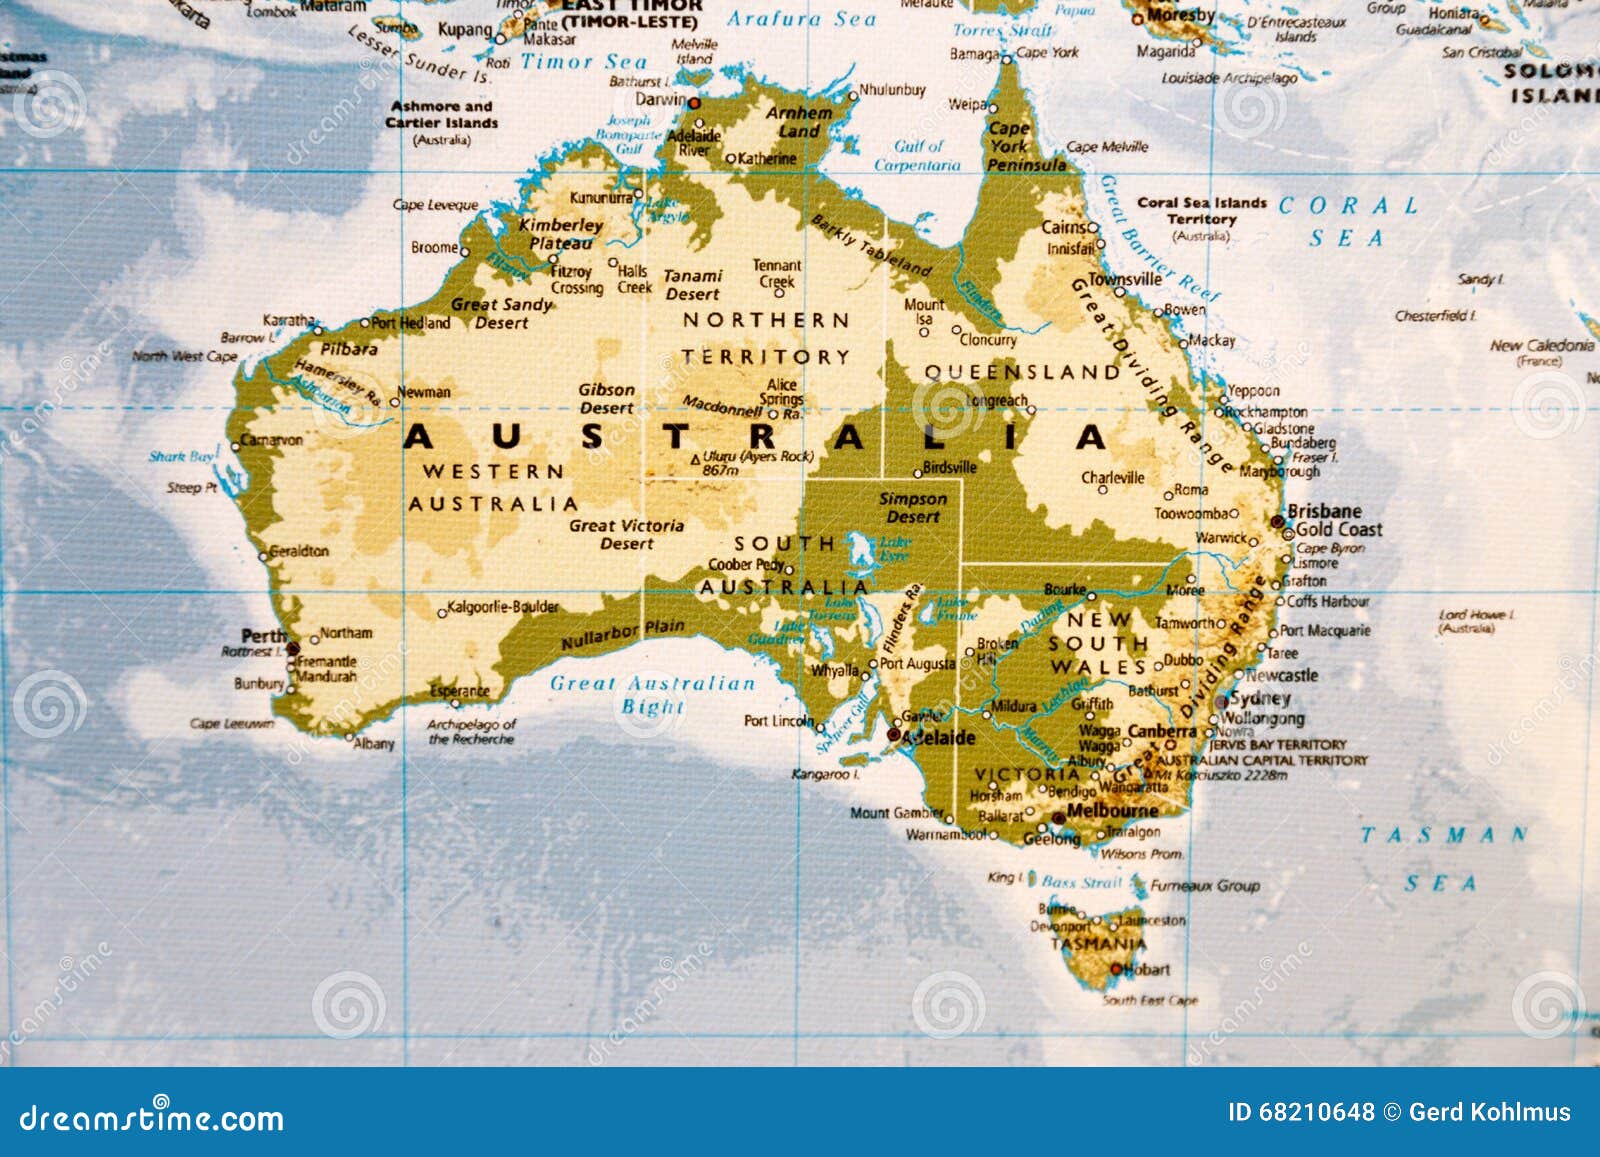 Большой водораздельный хребет на карте полушарий. Карта Австралии географическая. Физическая карта Австралии. Карта Австралии географическая крупная. Карта Австралии географическая крупные города.